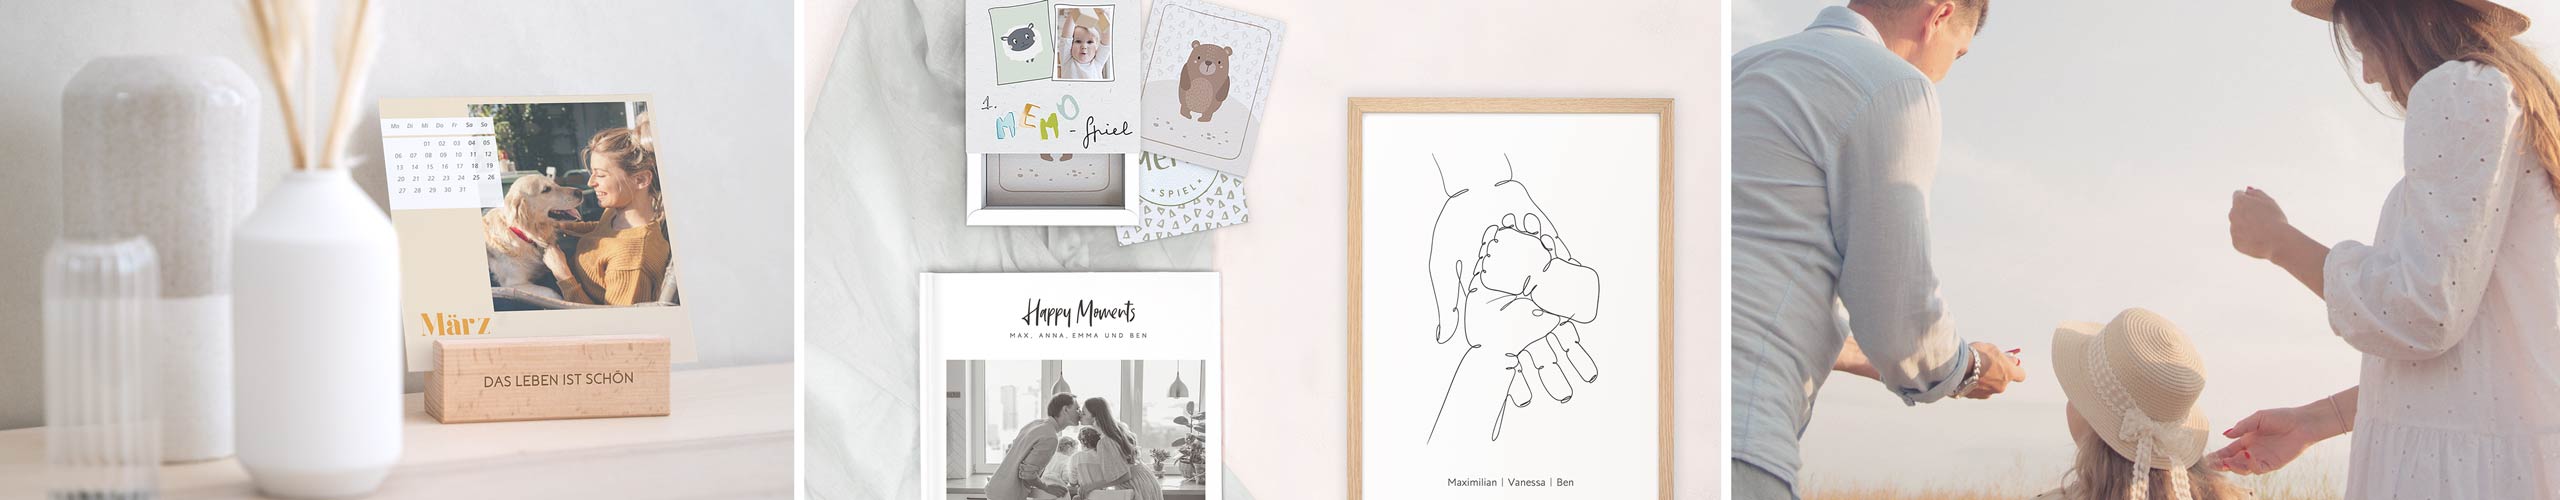 Personalisiertes Wandbild, Memory-Spiel und Fotobuch als Geschenke für die Familie